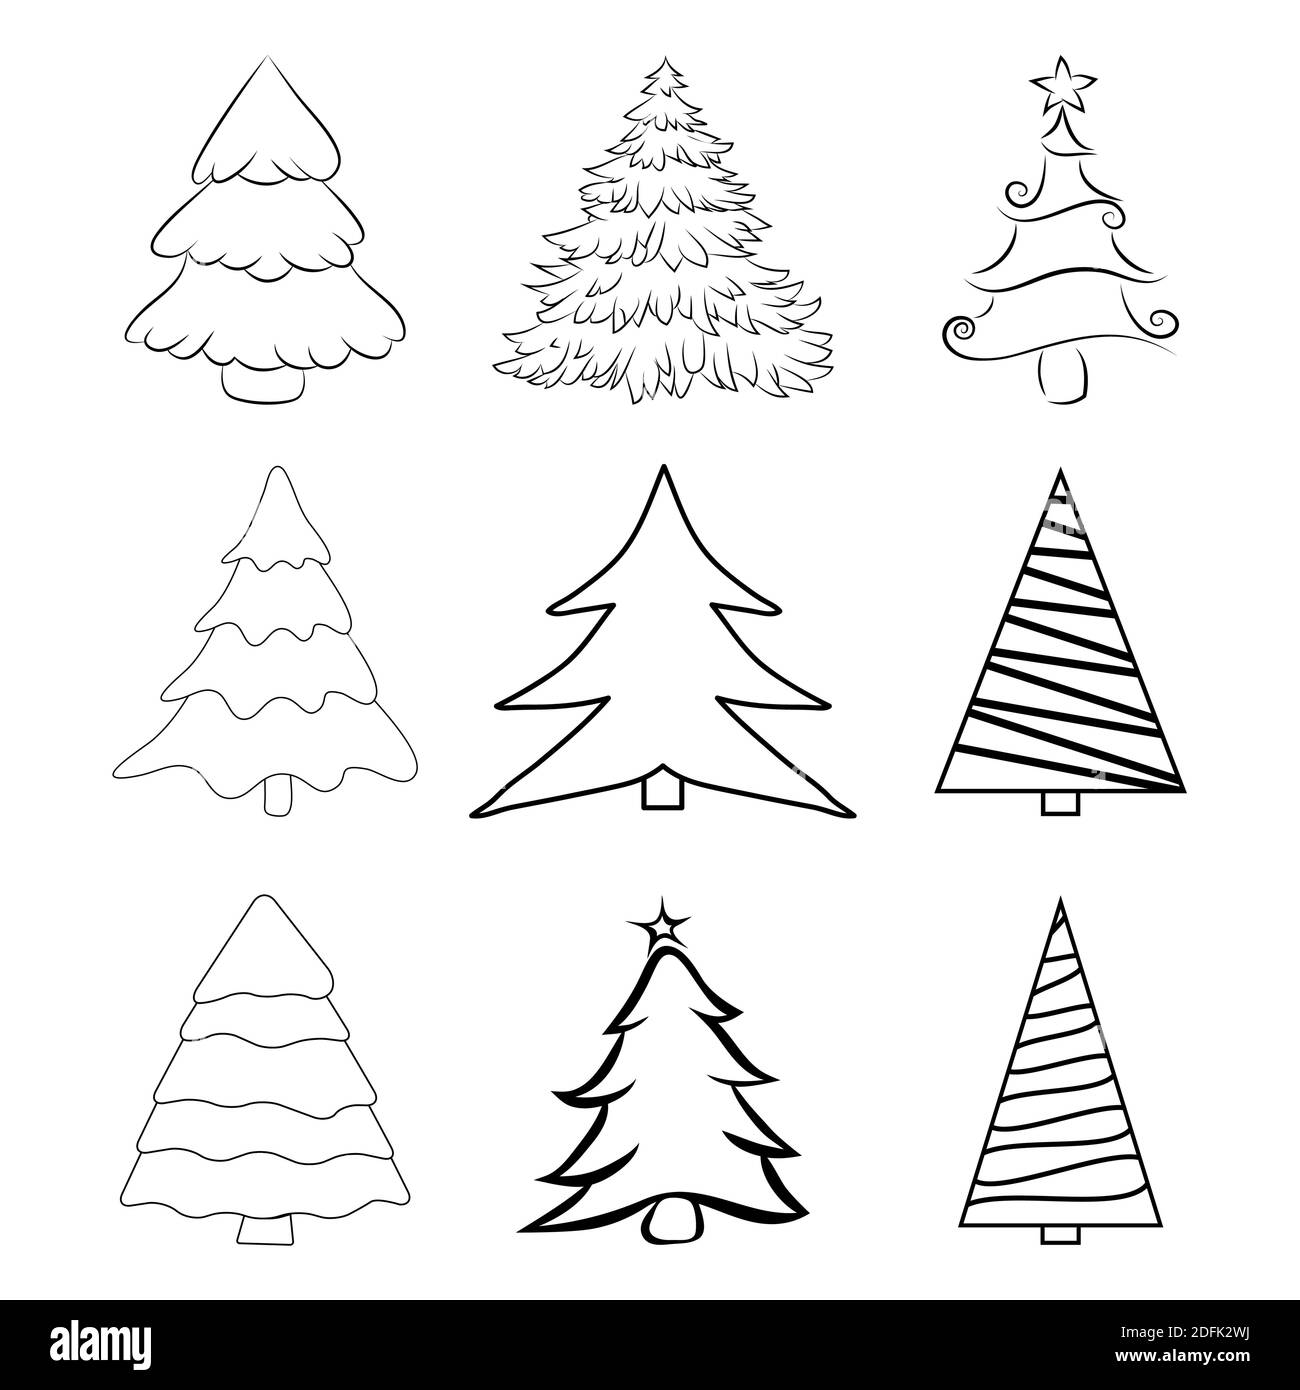 Weihnachtsbäume umreißen Set. Kontur von Kiefern für Weihnachtskarte oder Einladung. Abbildung Tannenbaum isoliert auf weißem Hintergrund. Symbol des dezember. Kol Stock Vektor